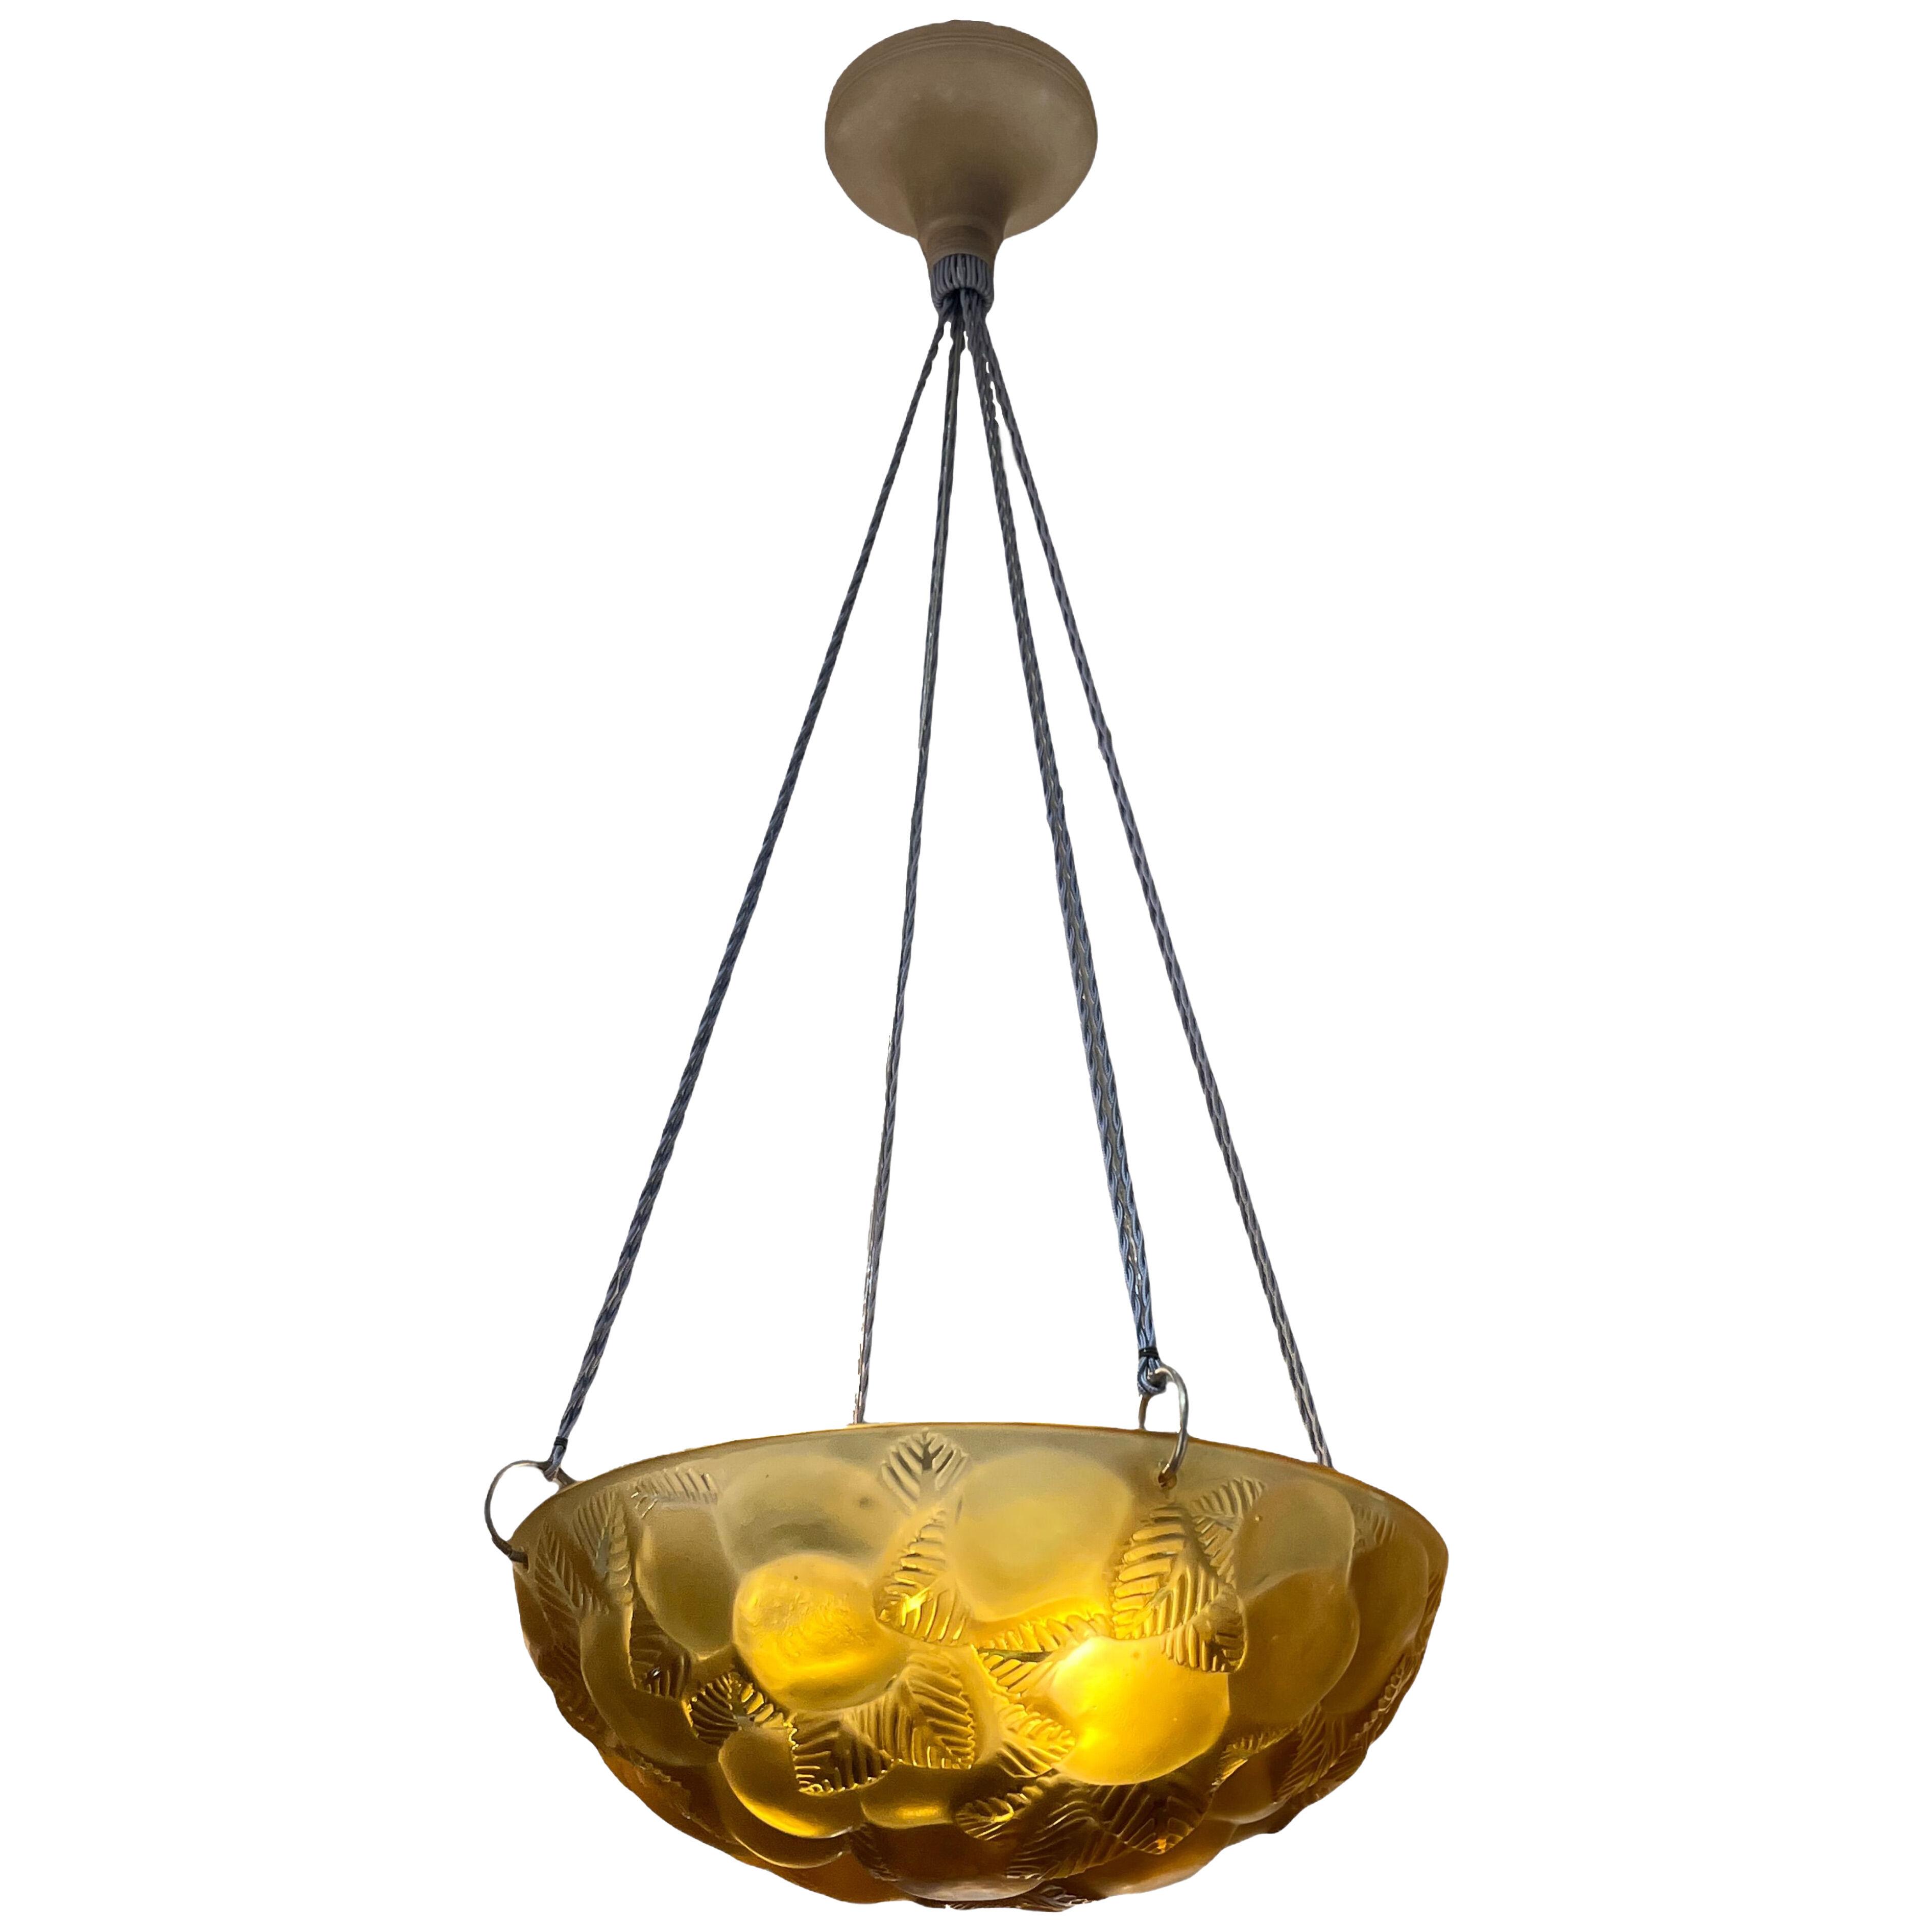 1929 René Lalique - Ceiling Fixture Light Chandelier Lausanne Yellow Amber Glass